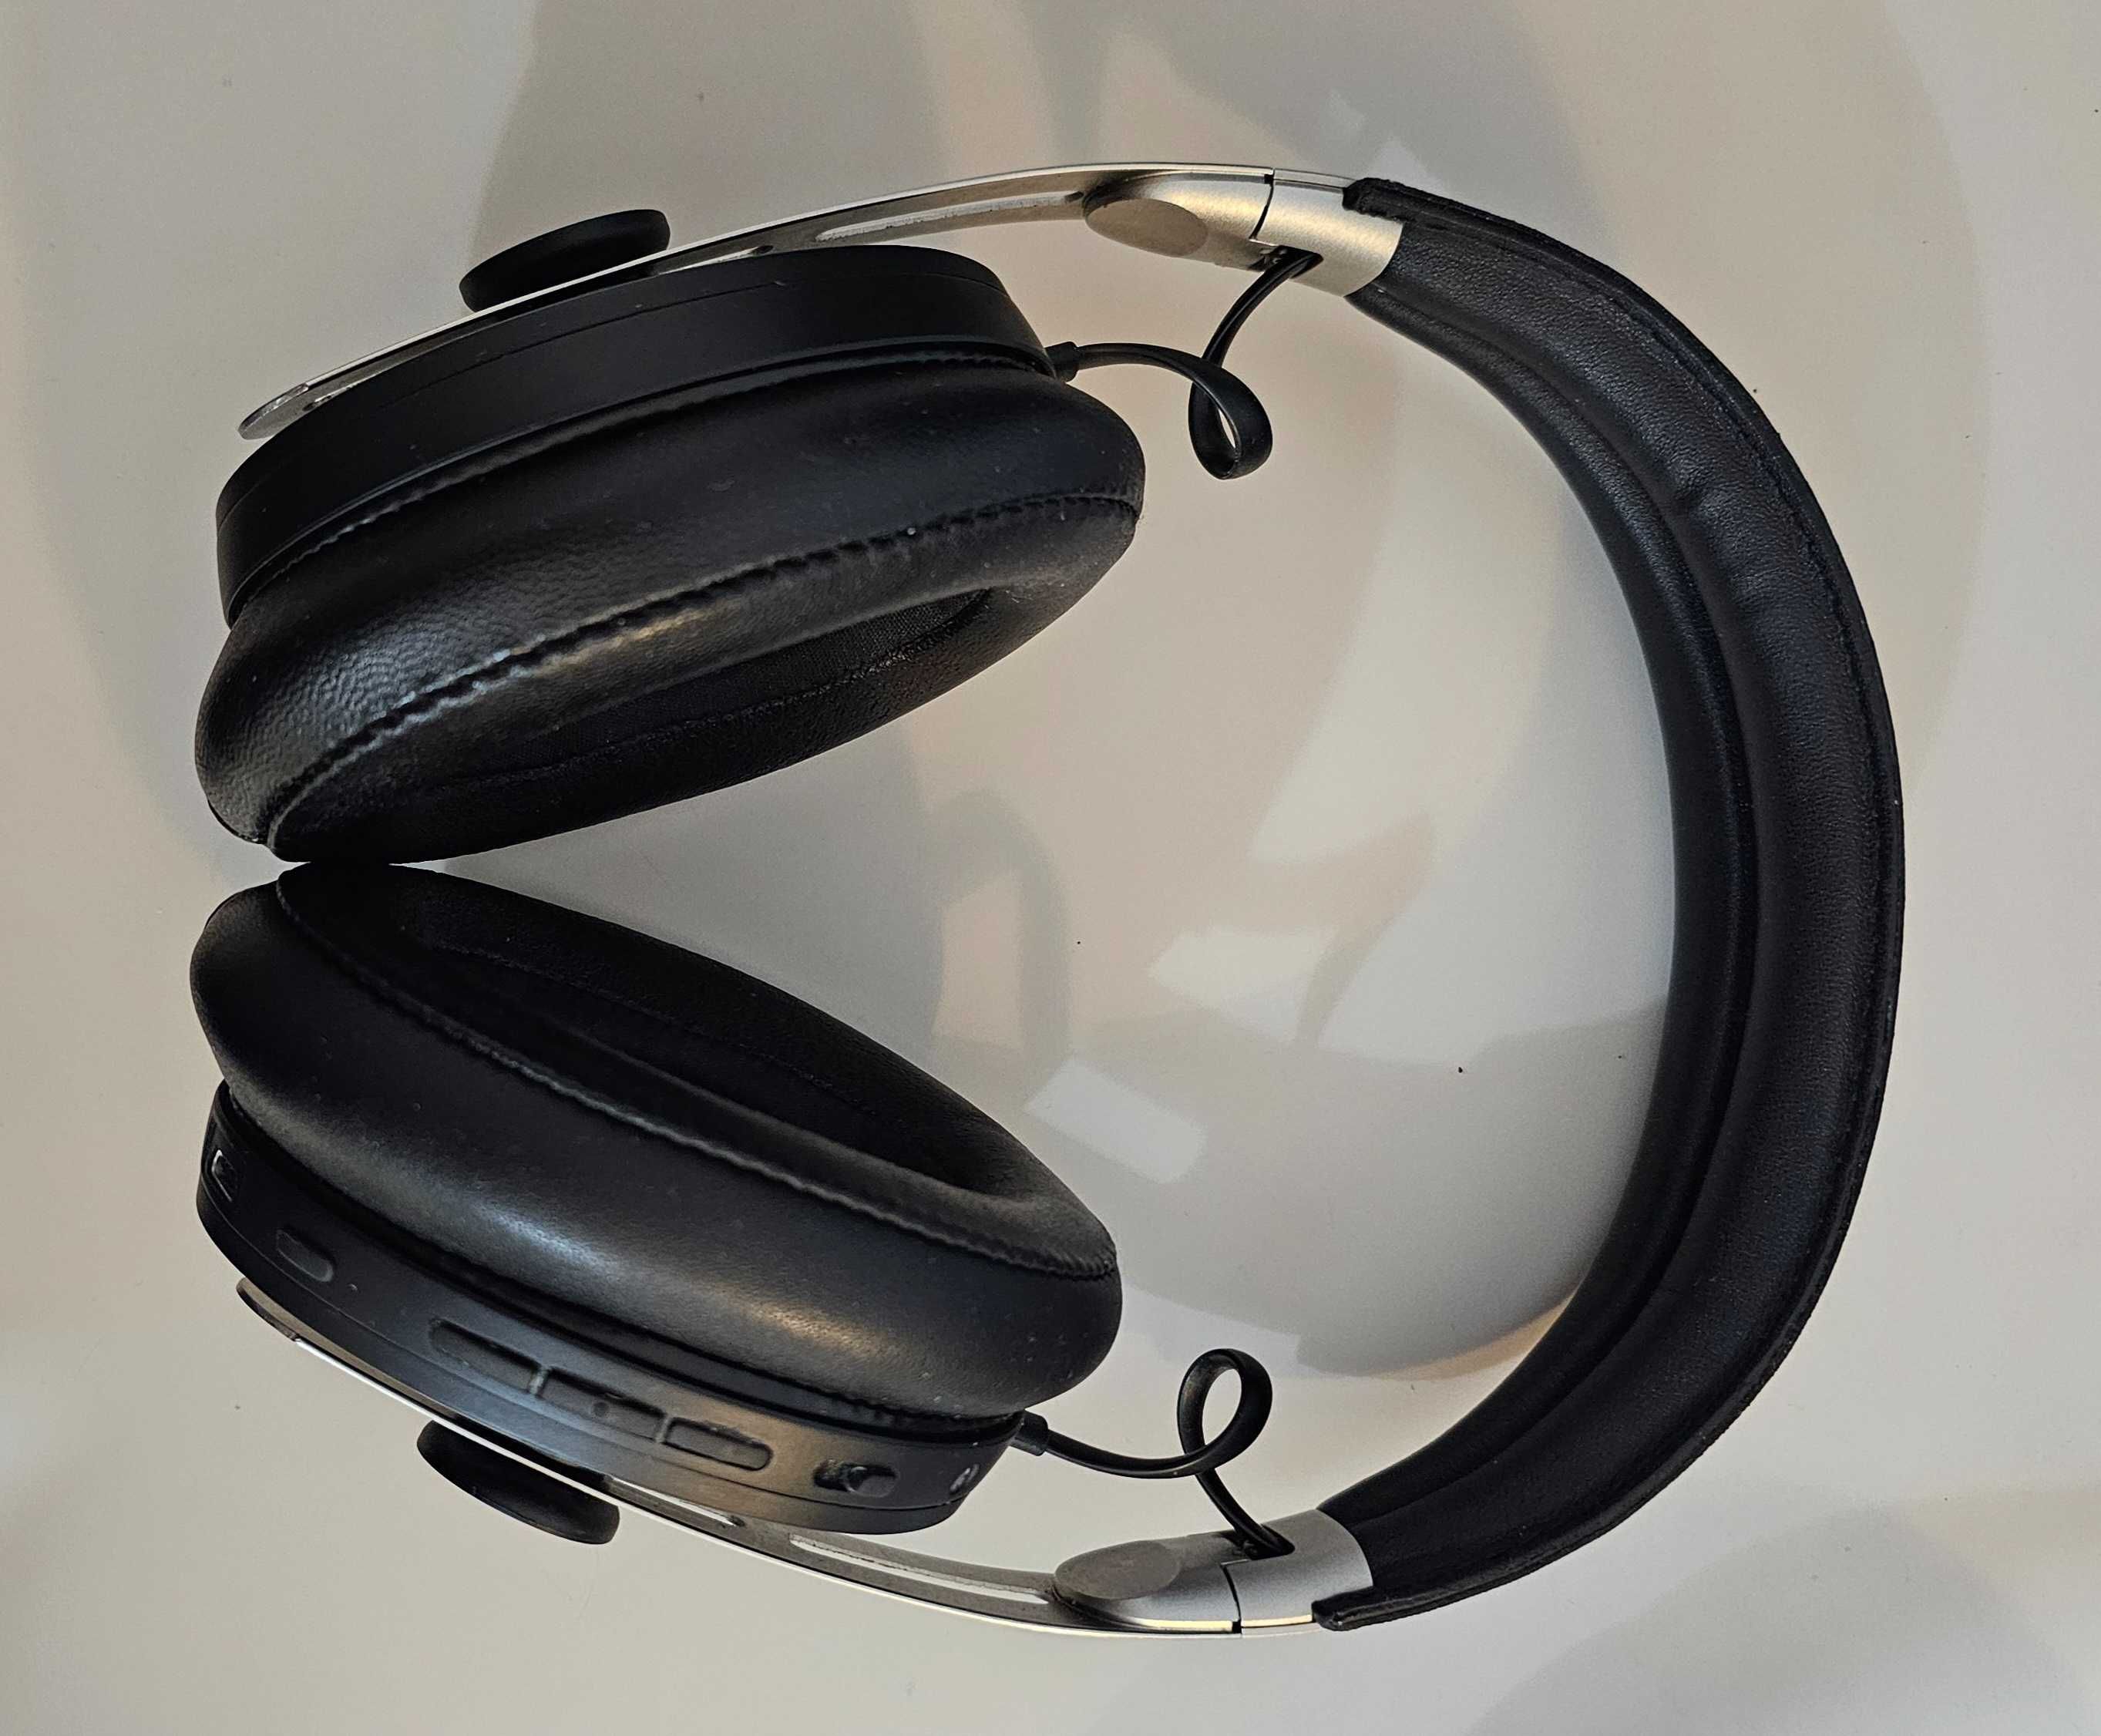 Casti Sennheiser Momentum 3 Over-Ear Wireless